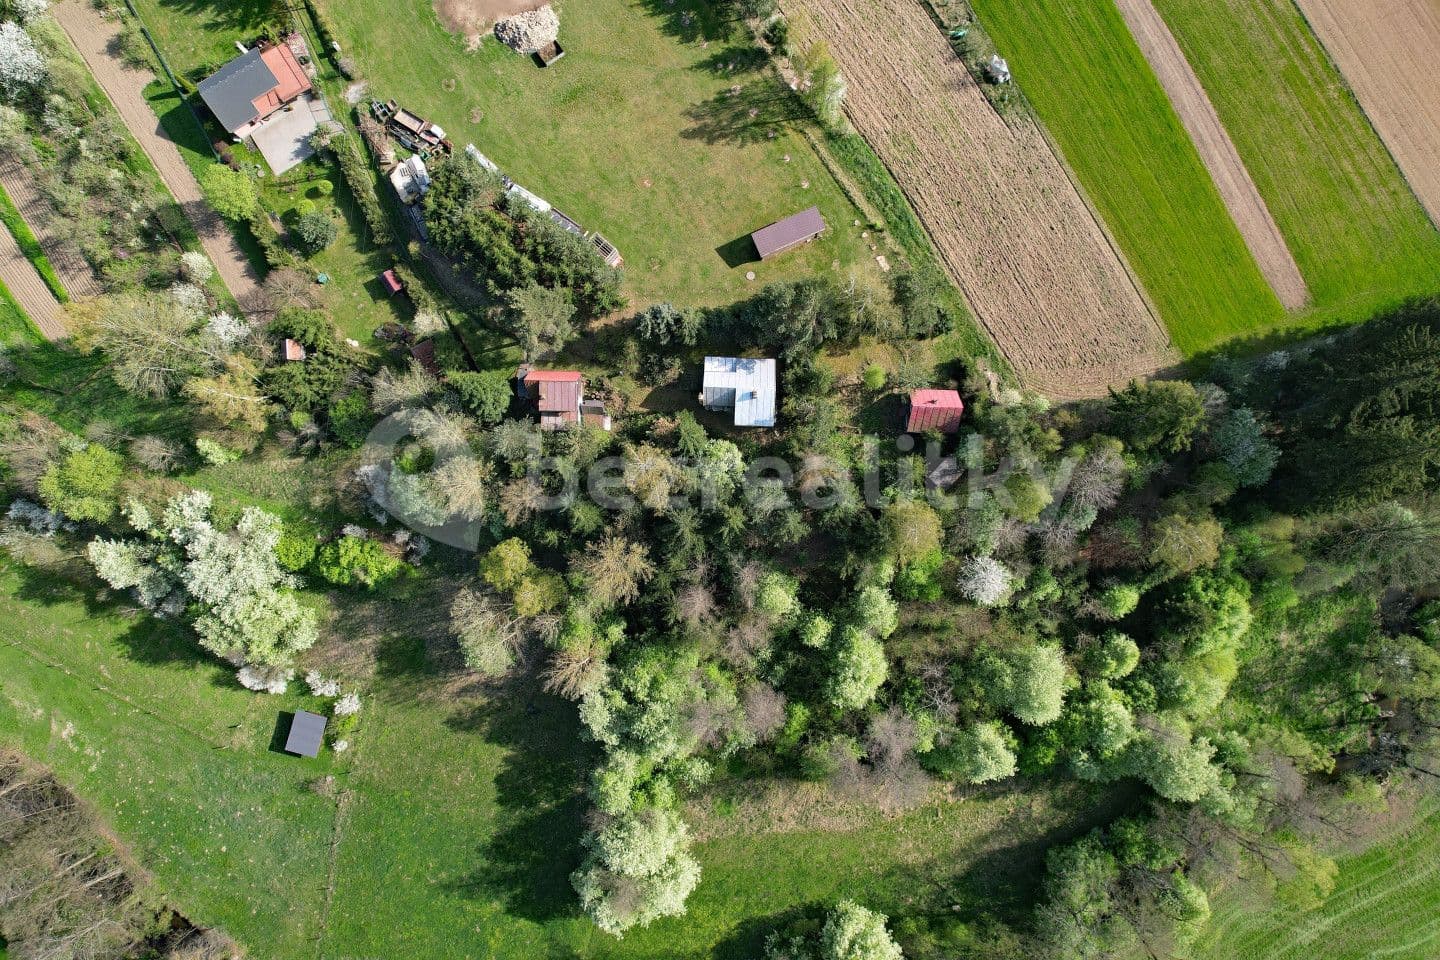 recreational property for sale, 339 m², Bobrová, Vysočina Region